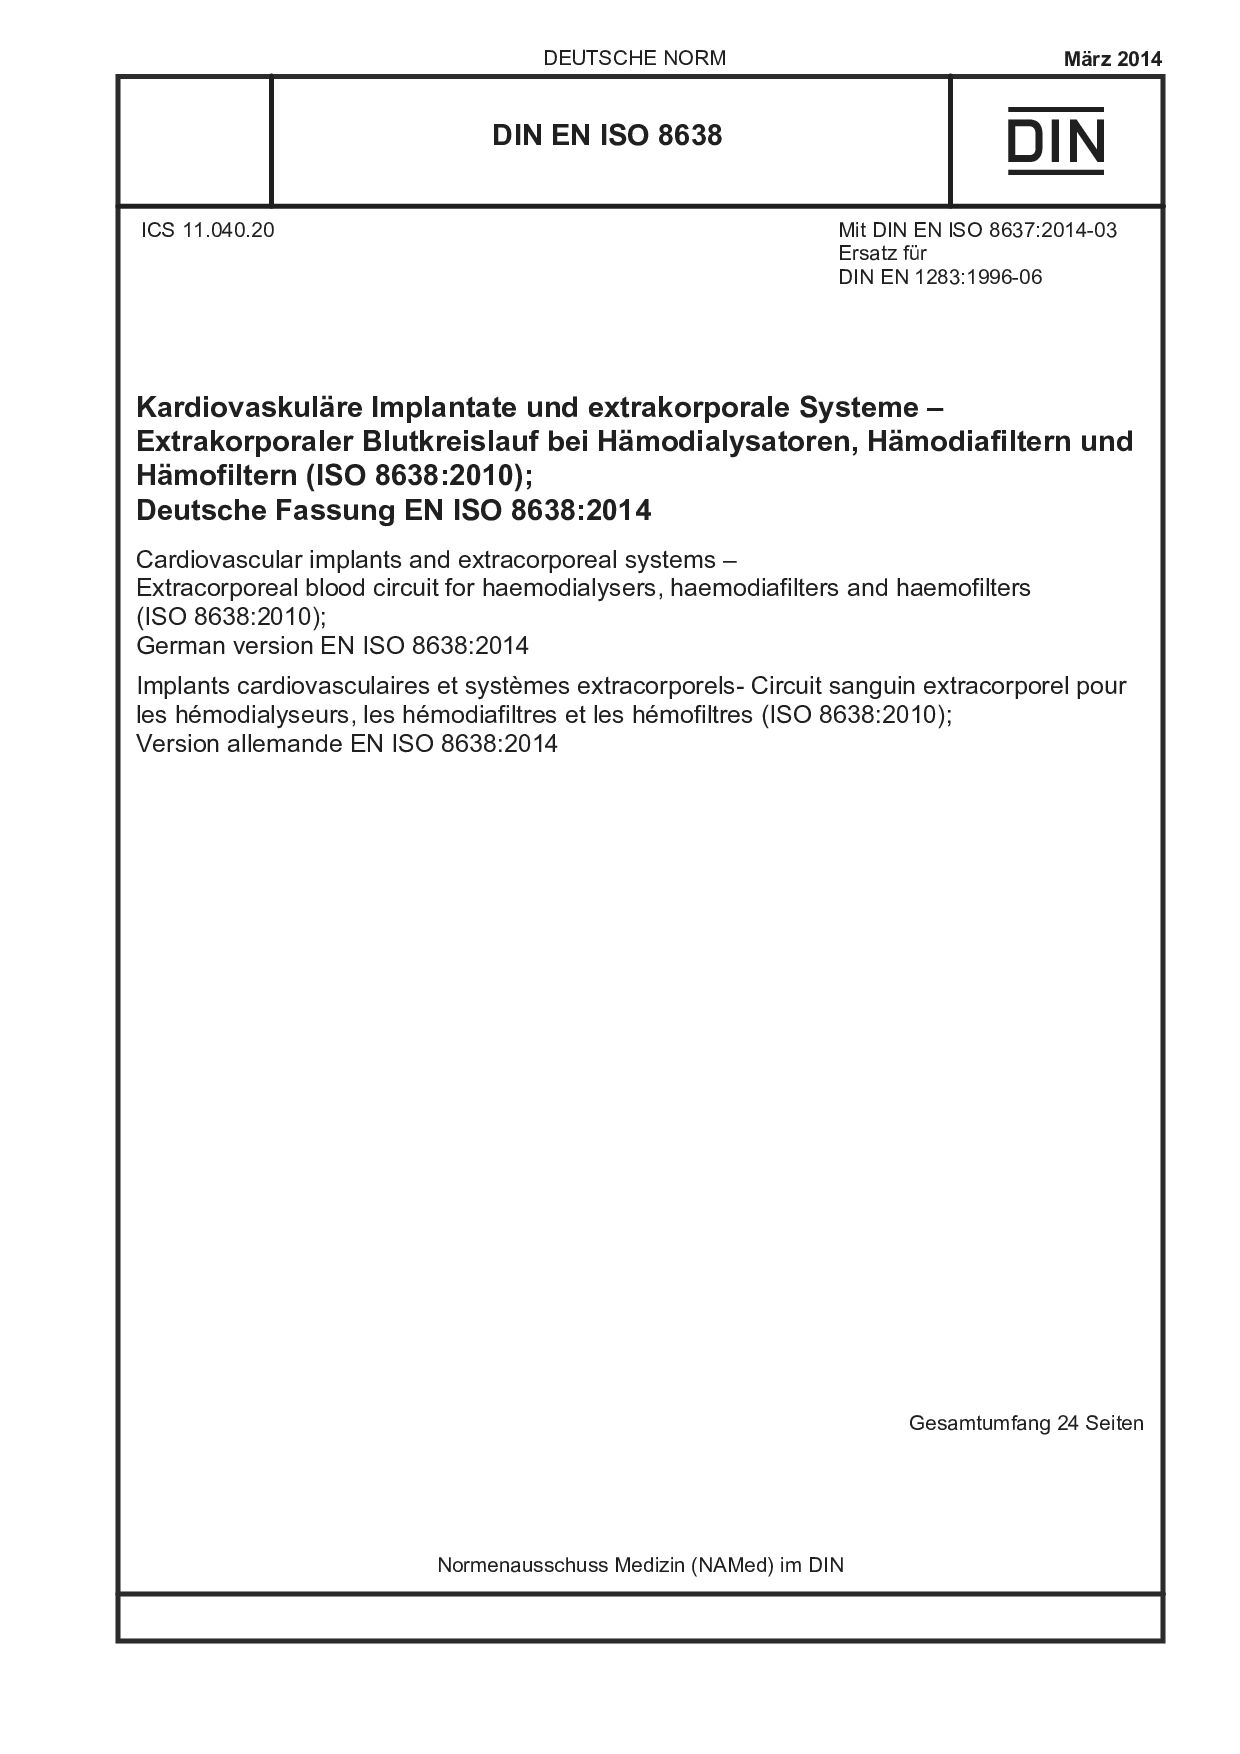 DIN EN ISO 8638:2014封面图